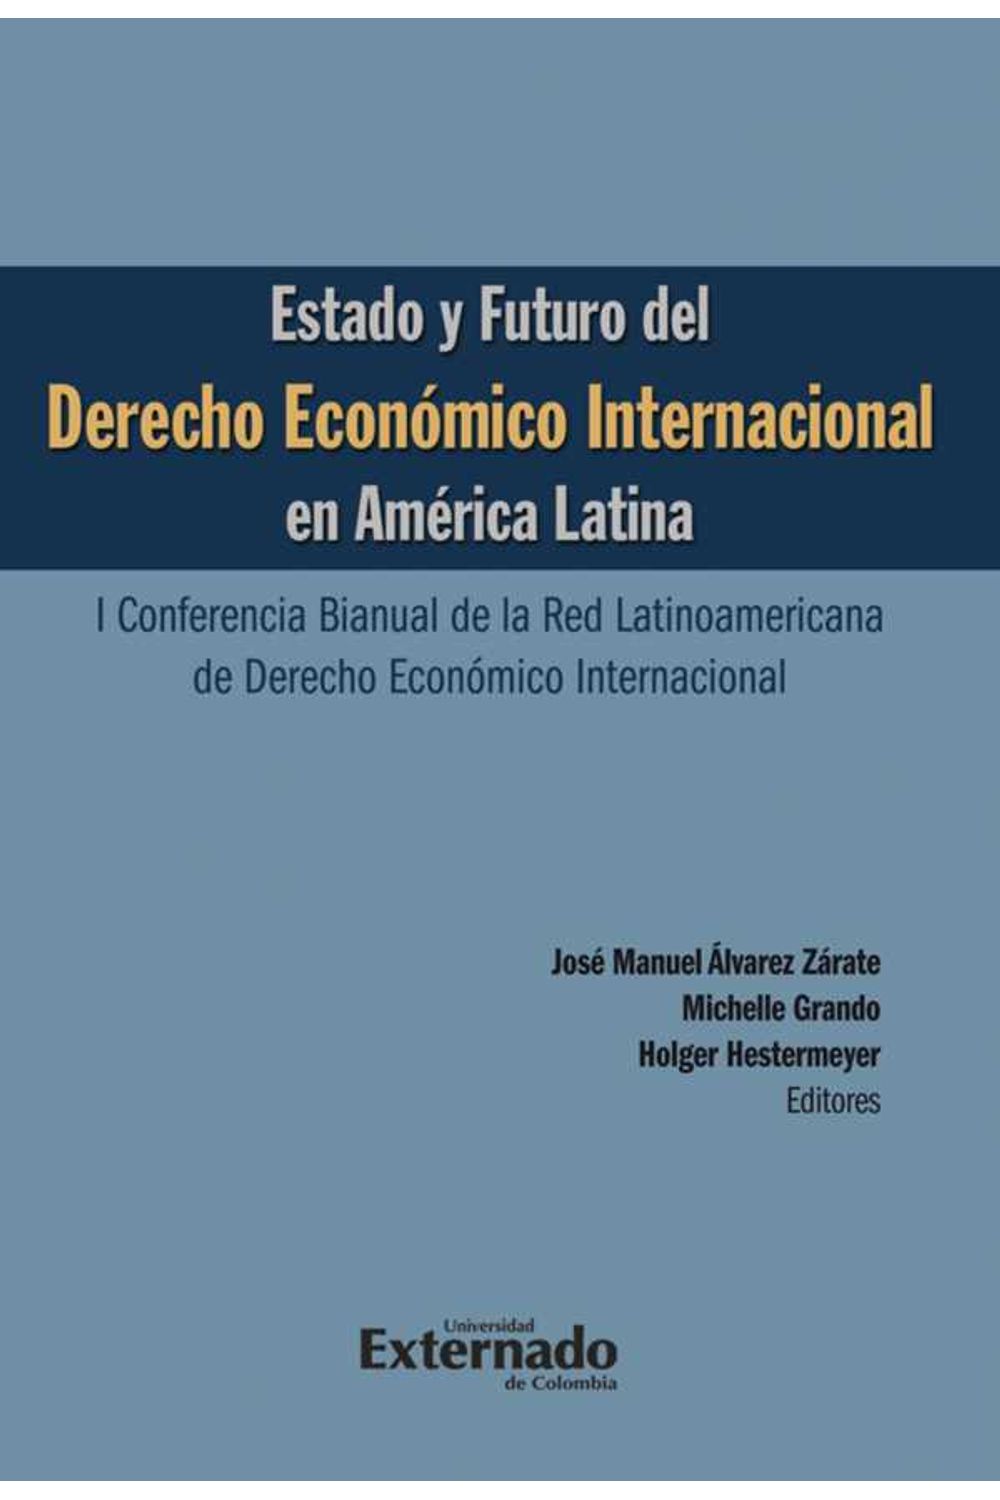 bw-estado-y-futuro-del-derecho-econoacutemico-internacional-en-ameacuterica-latina-i-conferencia-bianual-de-la-red-latinoamericana-de-derecho-econoacutemico-internacional-u-externado-de-colombia-9789587721119